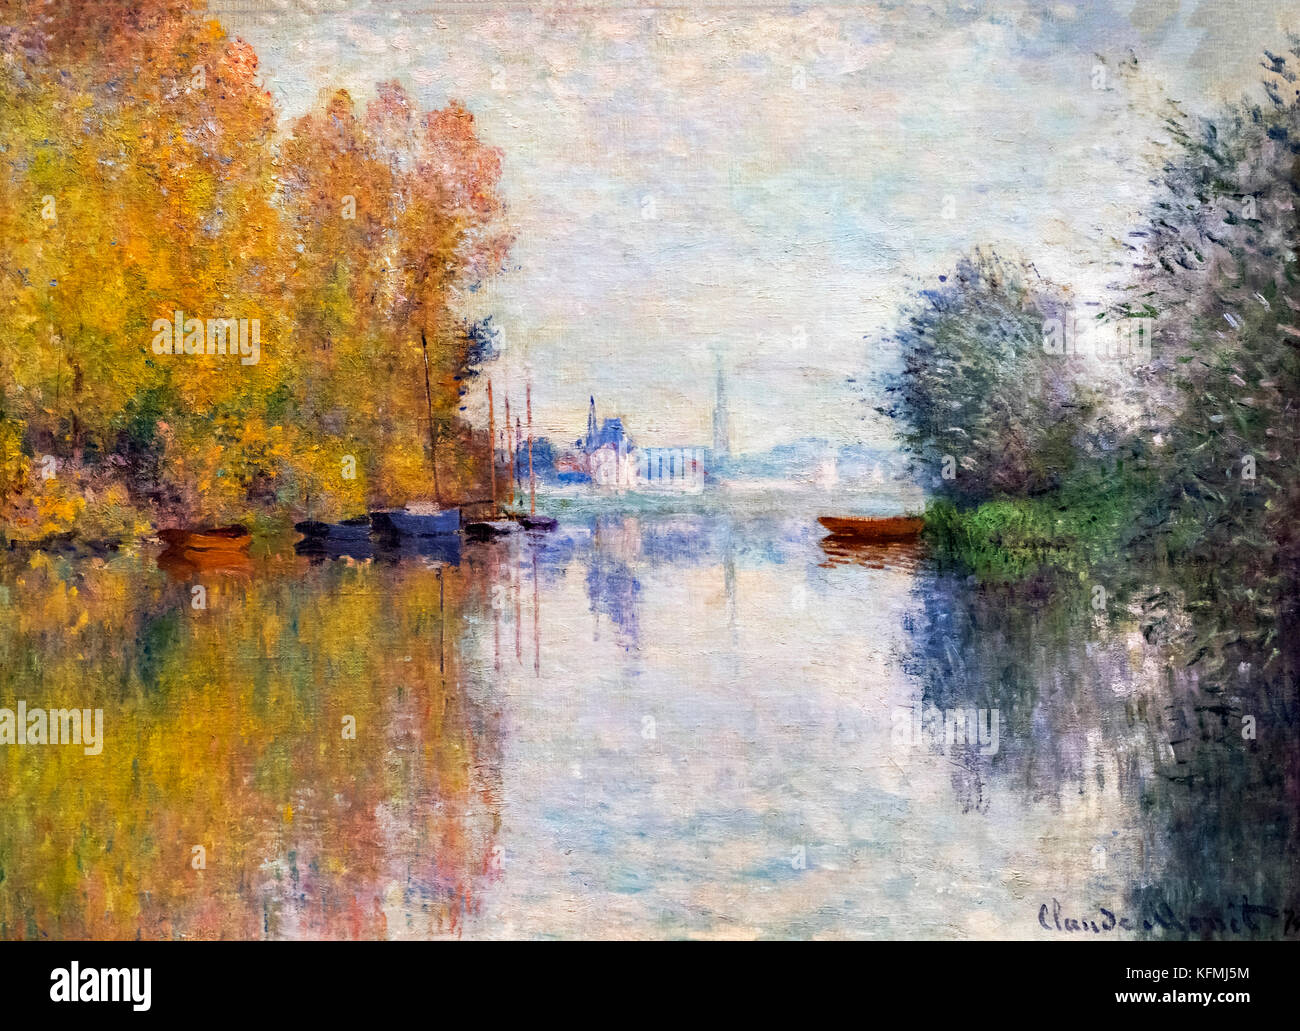 Herbst auf der Seine, Argenteuil (Automne sur la Seine, Argenteuil) von Claude Monet (1840-1926), Öl auf Leinwand, 1874 Stockfoto